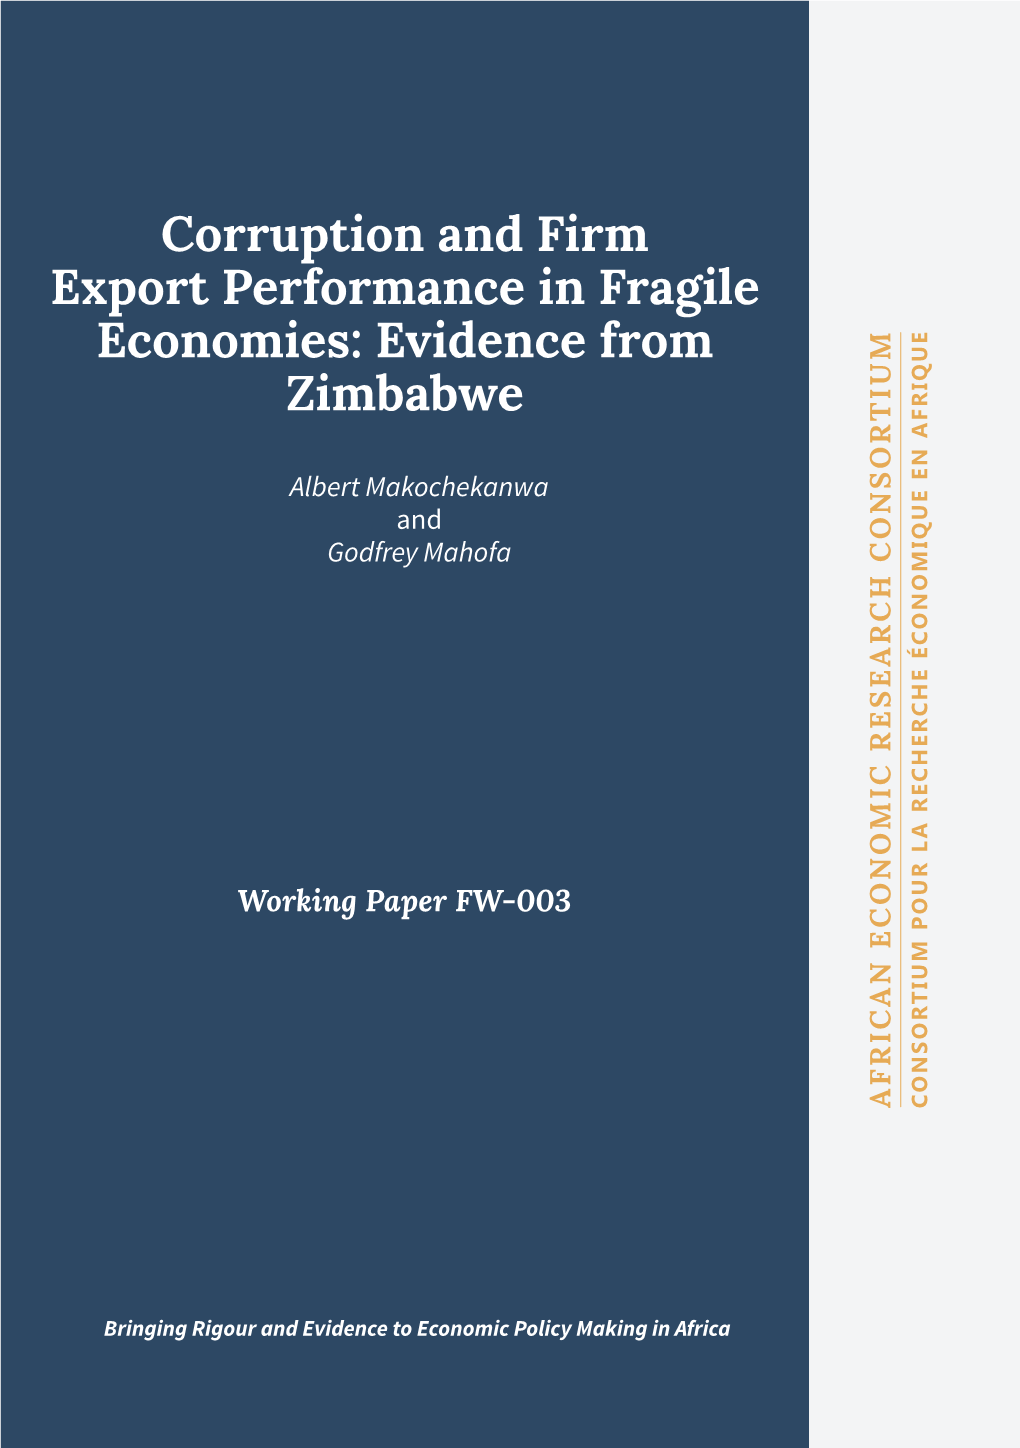 Working Paper FW-003 Zimbabwe Albert Makochekanwa Godfrey Mahofa And